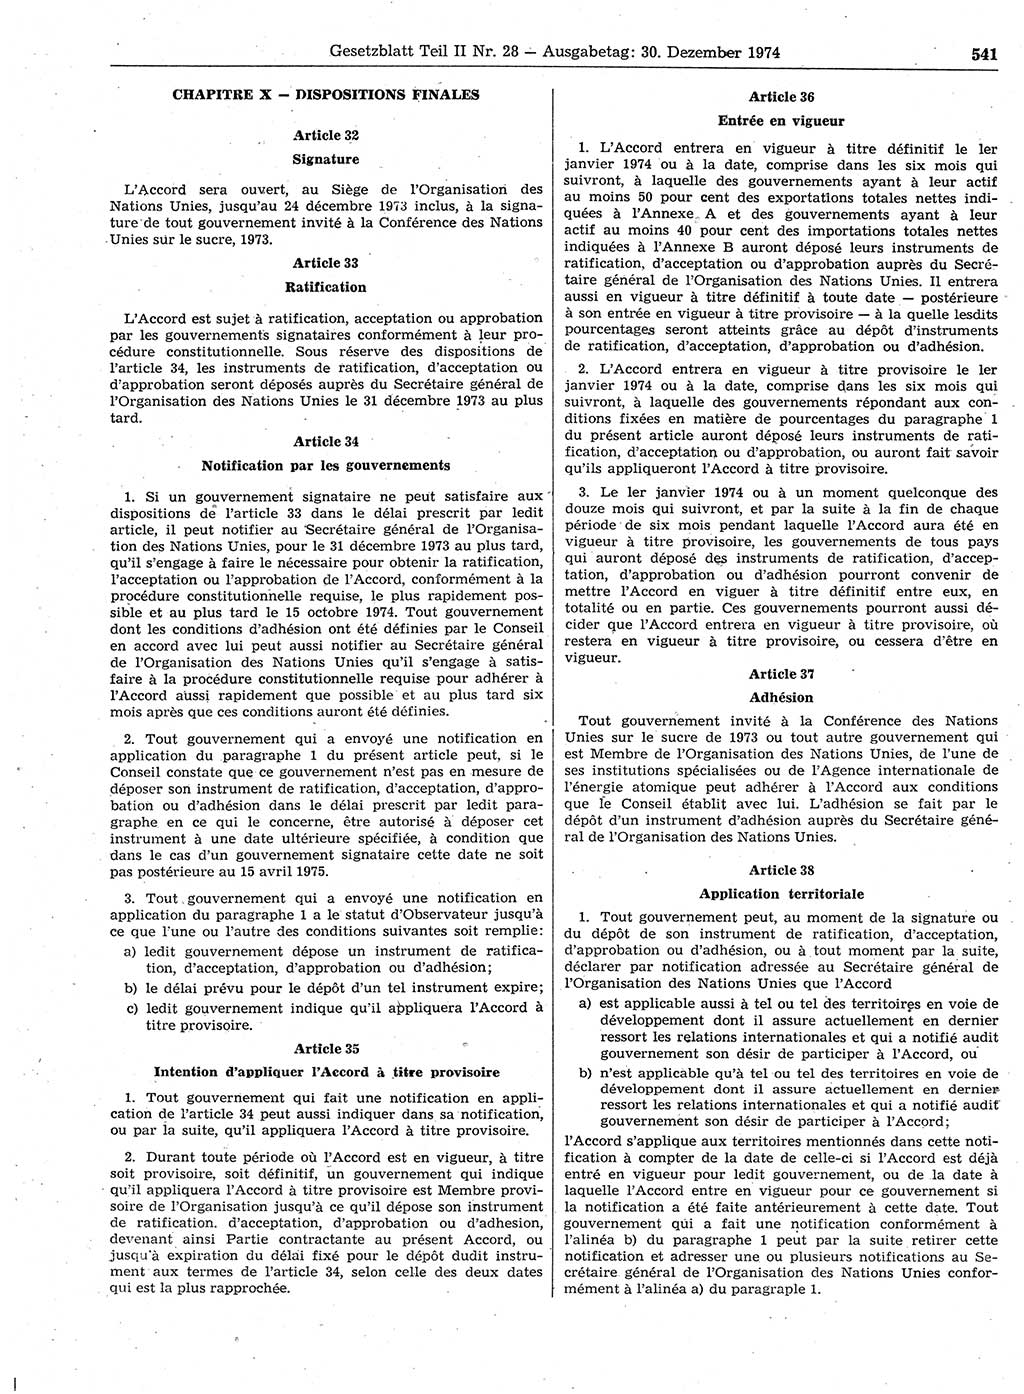 Gesetzblatt (GBl.) der Deutschen Demokratischen Republik (DDR) Teil ⅠⅠ 1974, Seite 541 (GBl. DDR ⅠⅠ 1974, S. 541)